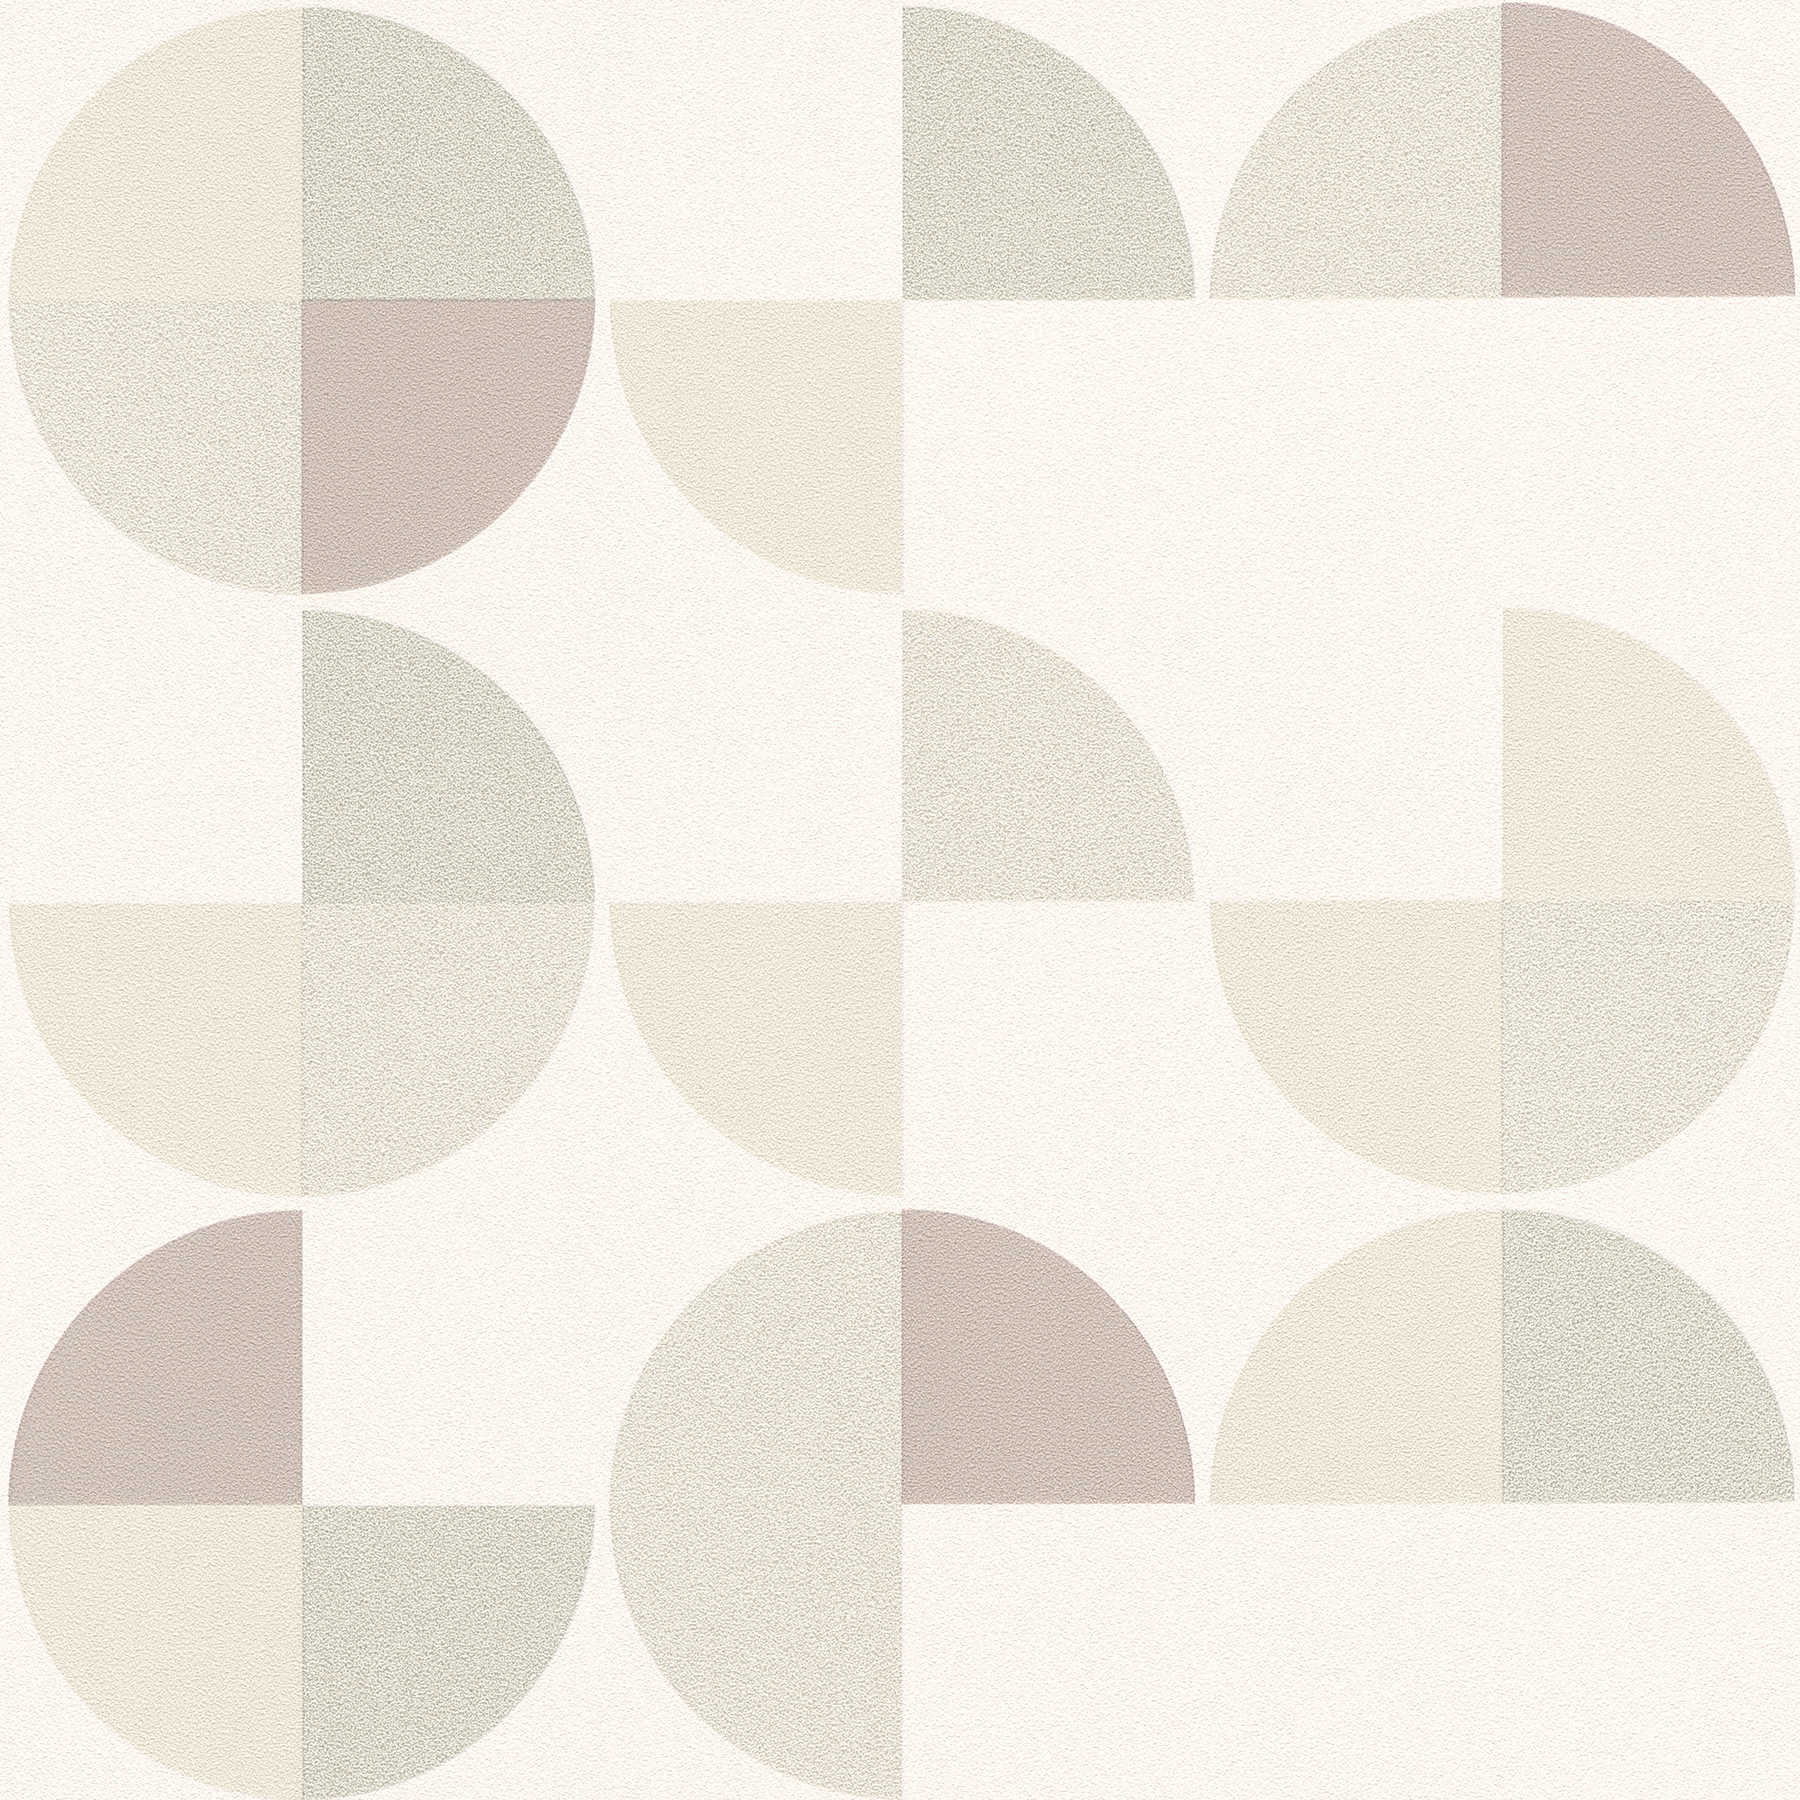         Geometrische Mustertapete im Scandinavian Style – Grau, Beige, Weiß
    